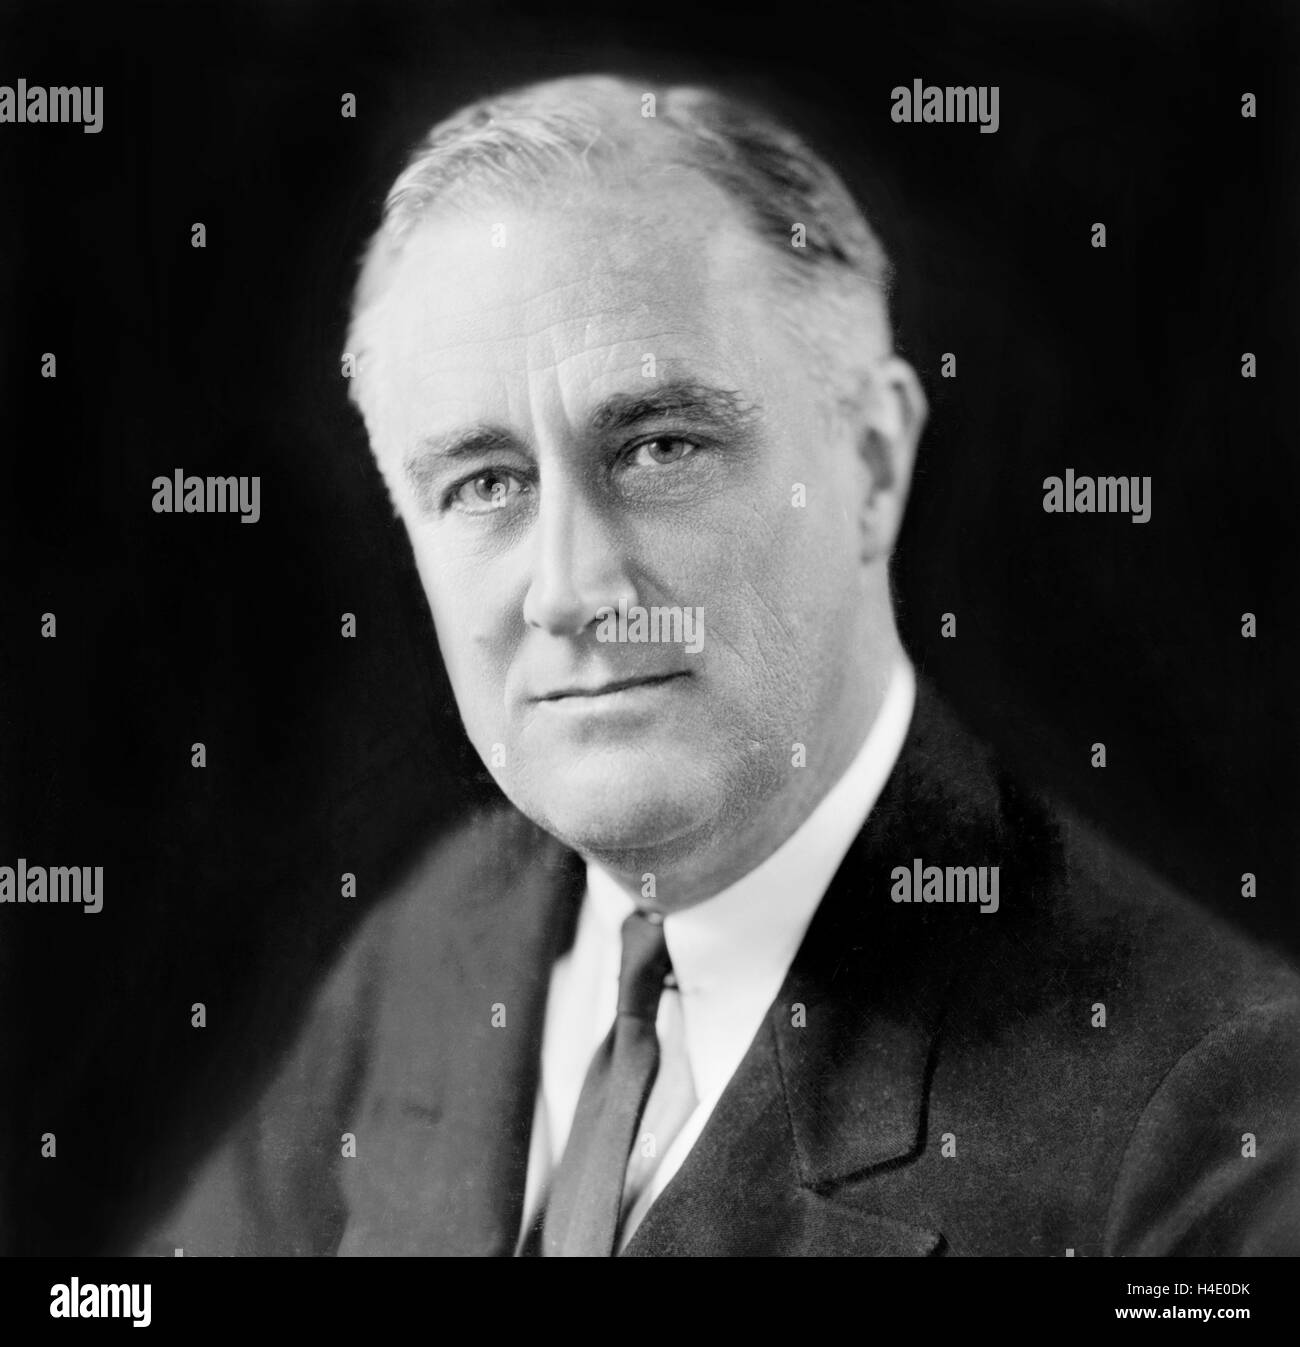 Franklin D Roosevelt (1882-1945), Porträt von der 32. Präsident der USA, c. Dec 1933 Stockfoto